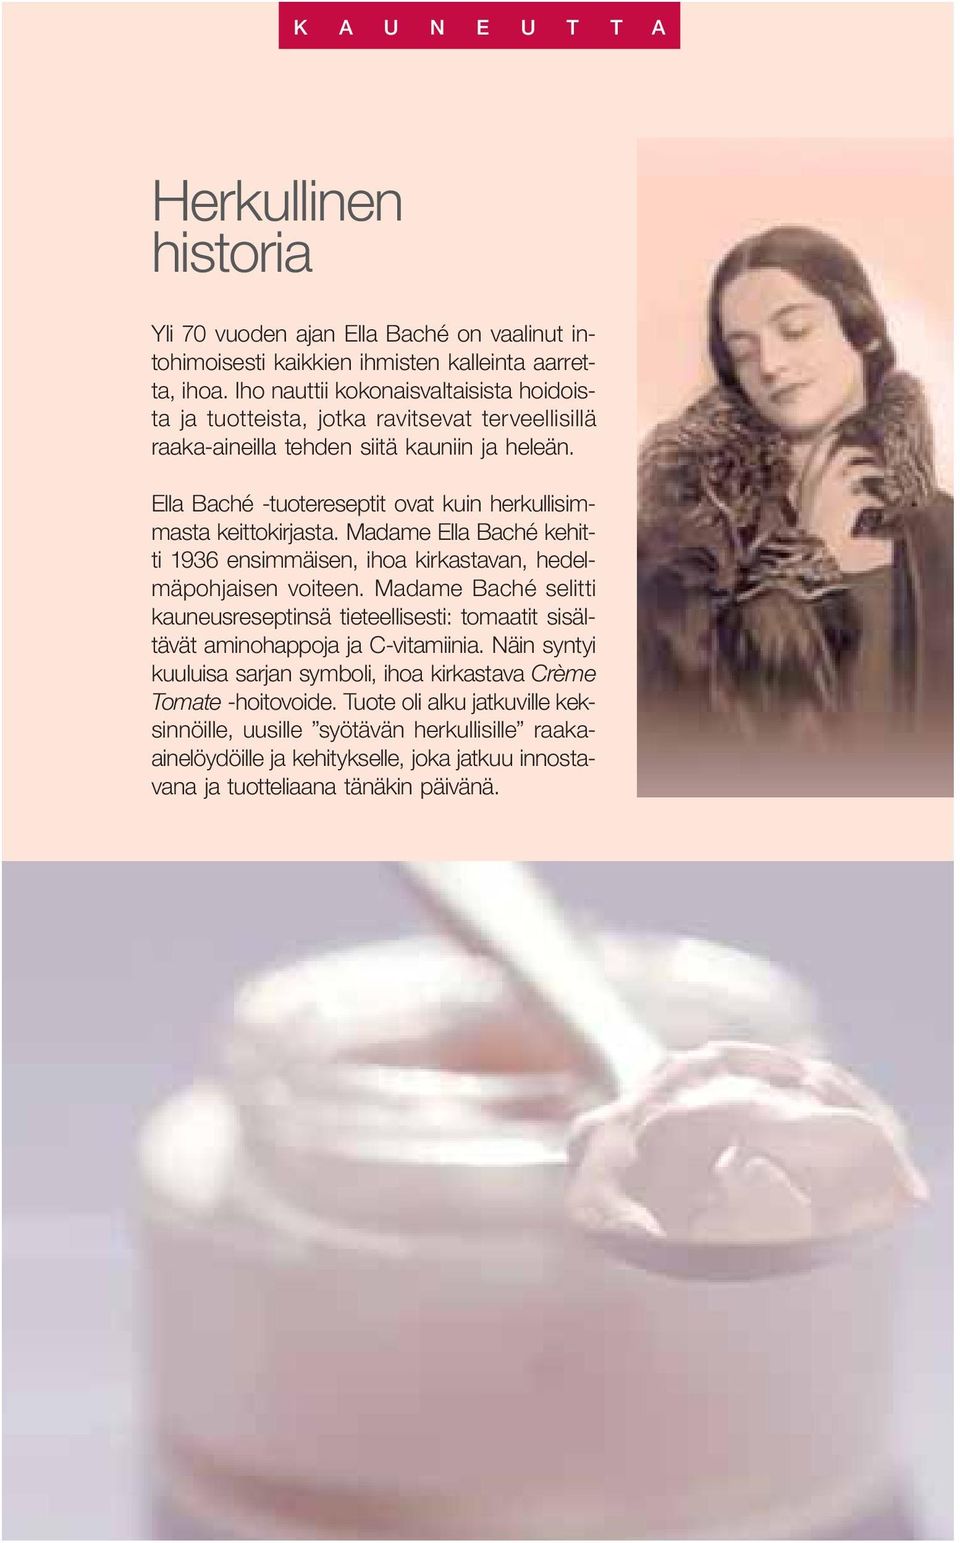 Ella Baché -tuotereseptit ovat kuin herkullisimmasta keittokirjasta. Madame Ella Baché kehitti 1936 ensimmäisen, ihoa kirkastavan, hedelmäpohjaisen voiteen.